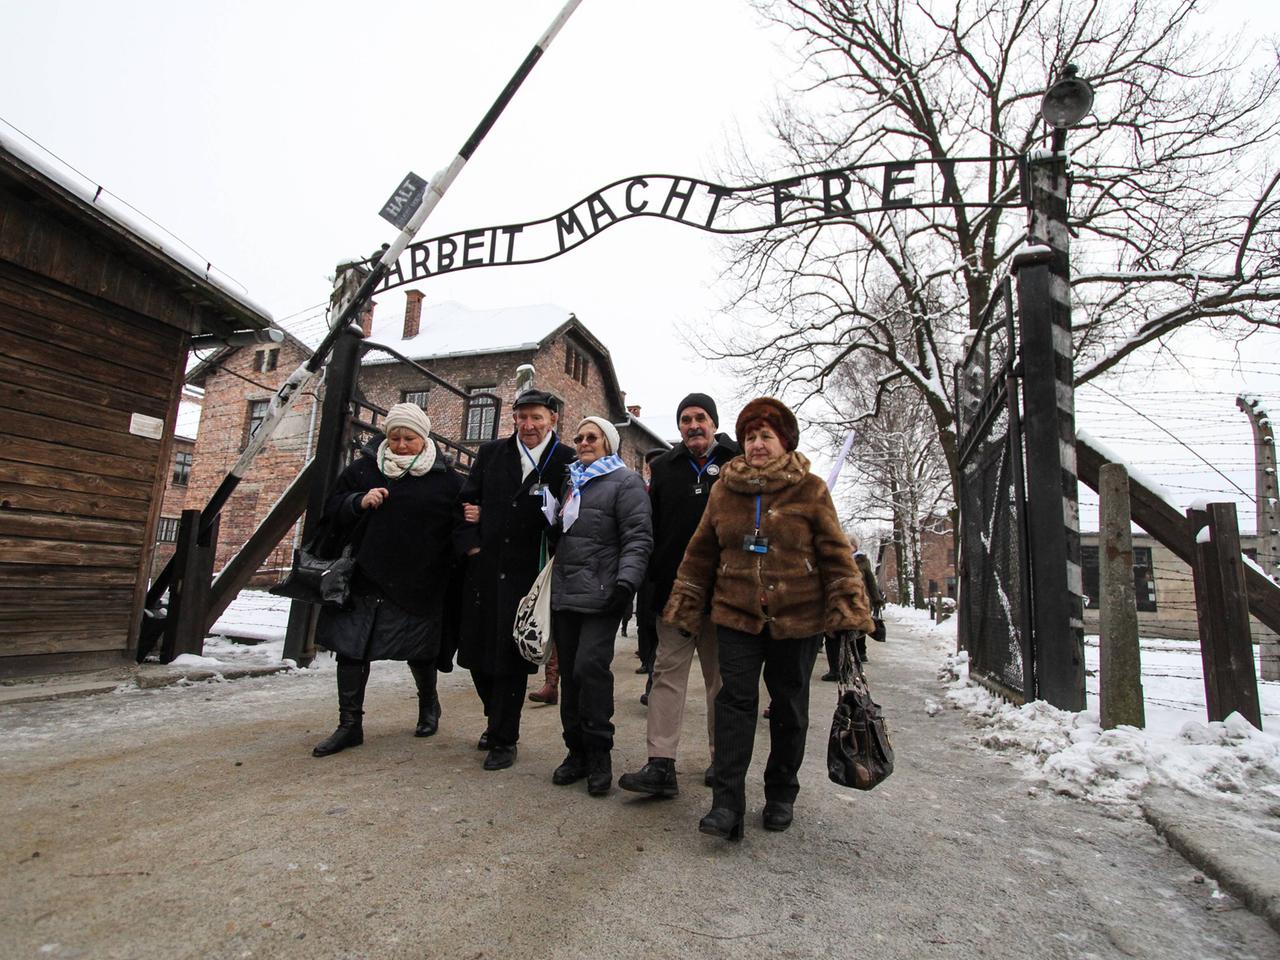 Überlebende des Konzentrationslagers Auschwitz vor dem Eingang mit dem Schriftzug "Arbeit macht frei".